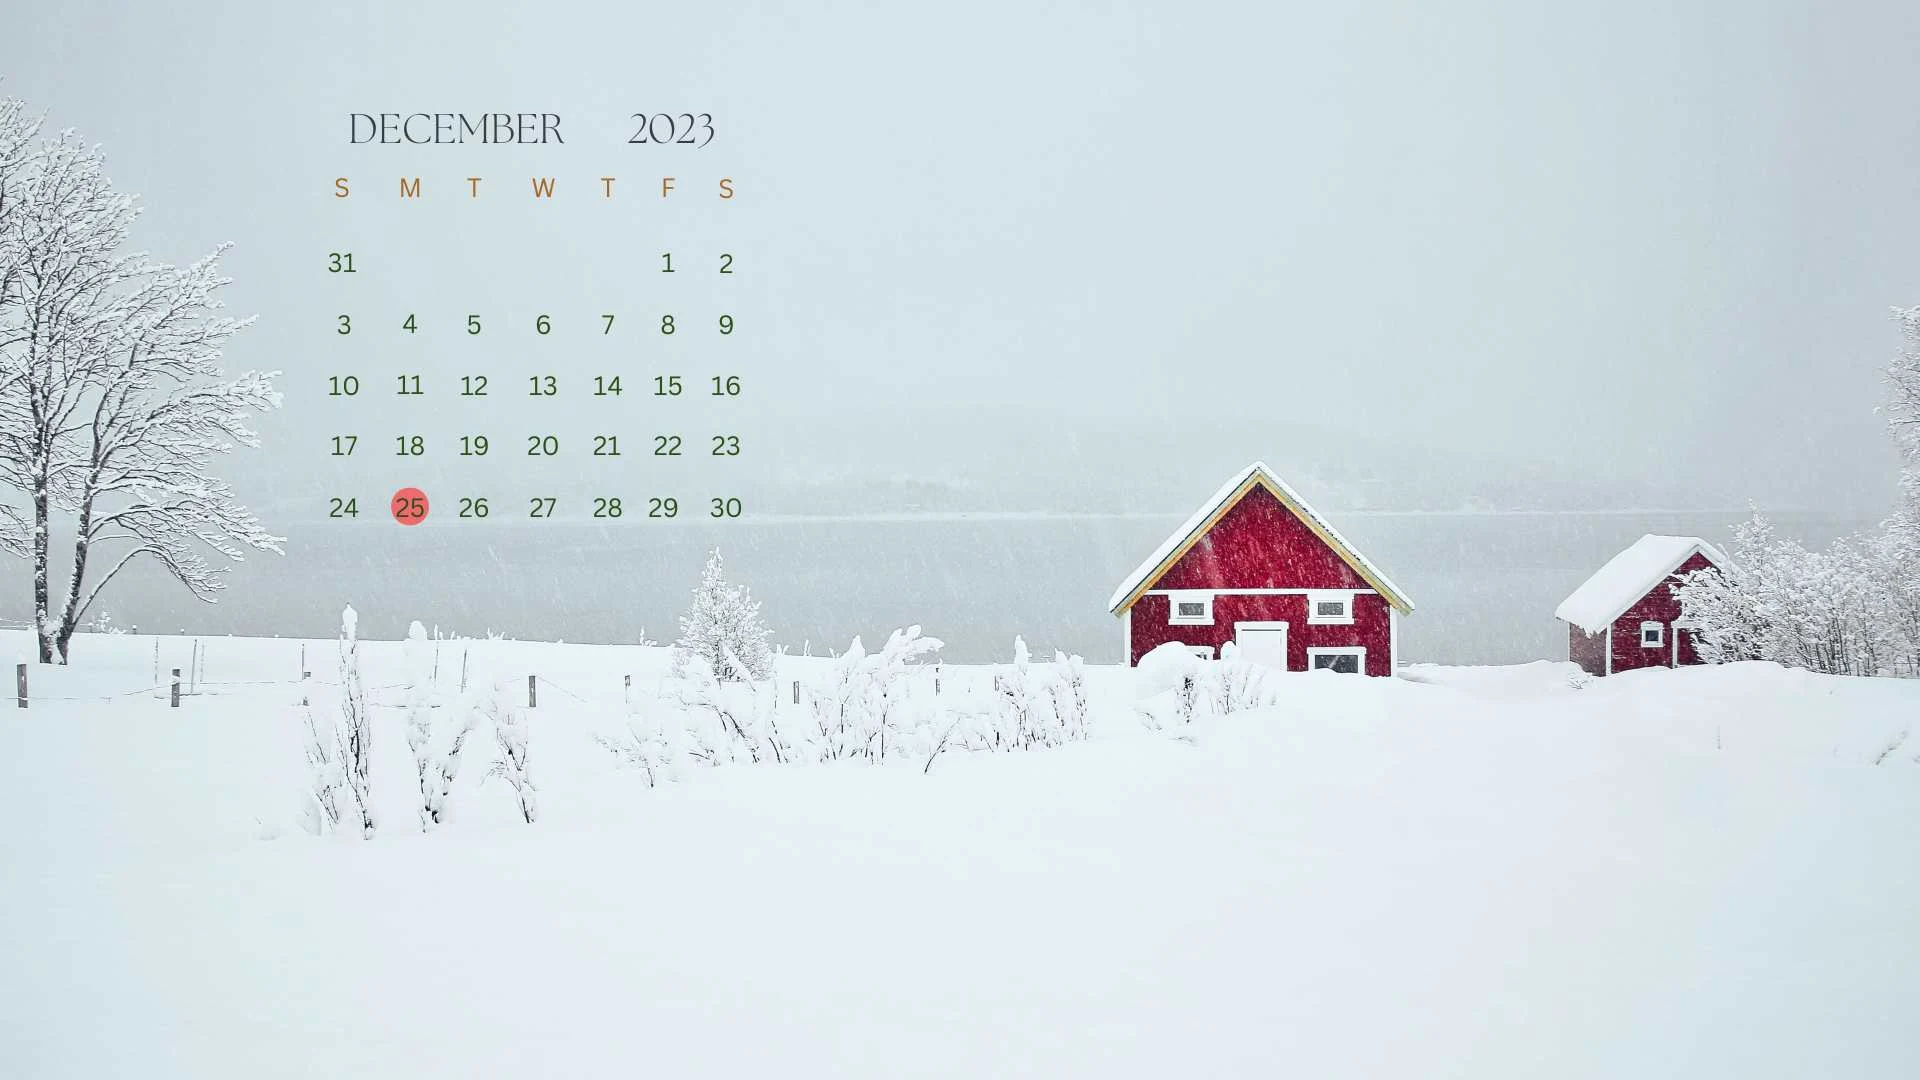 december 2023 winter theme calendar wallpaper